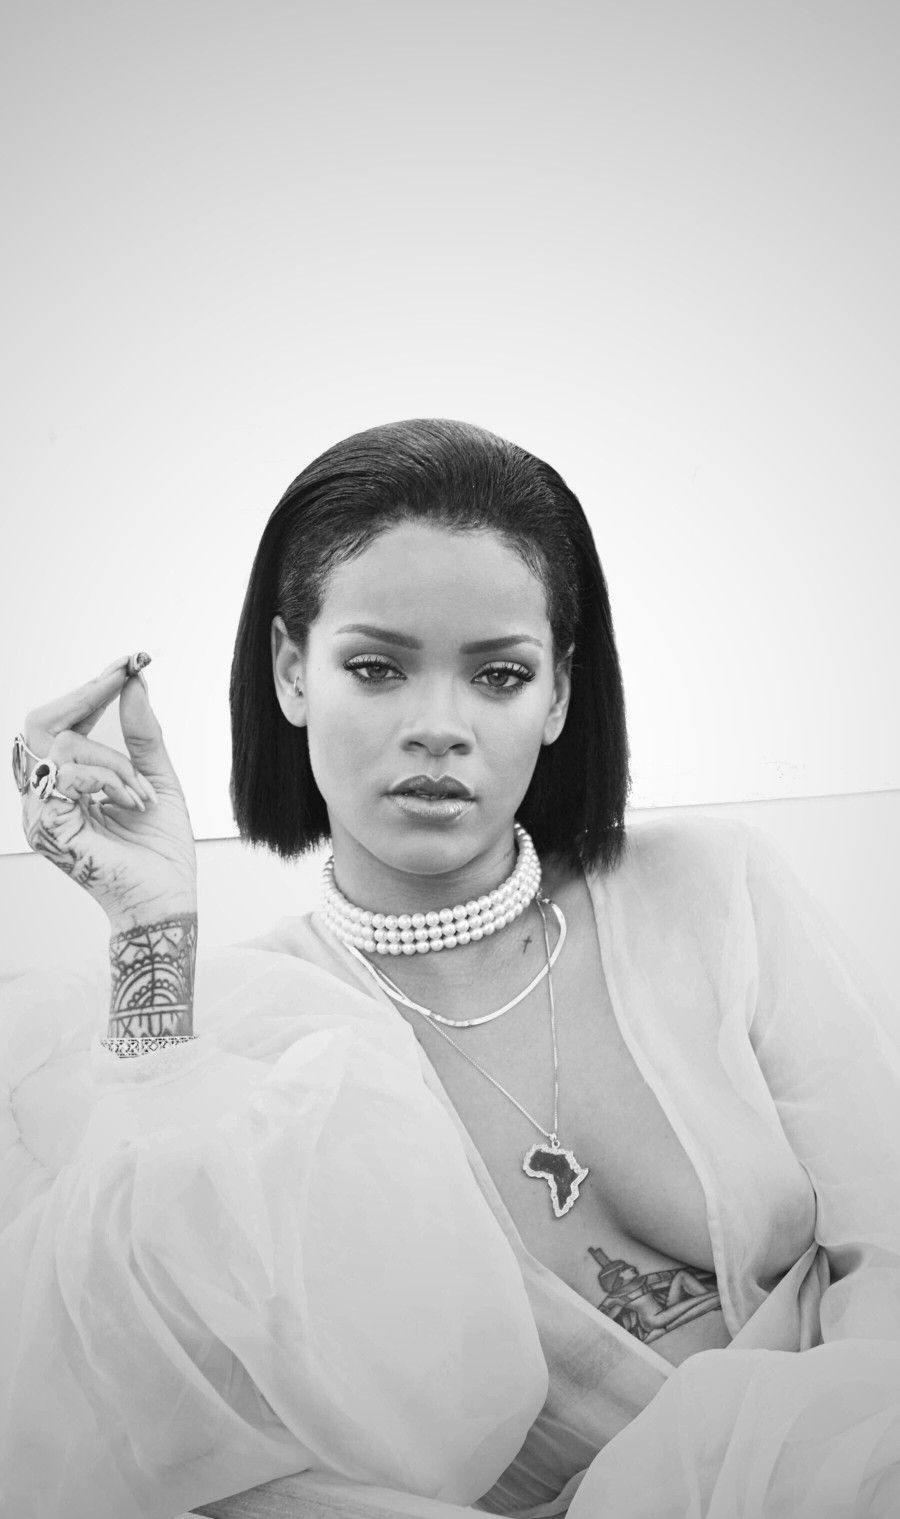 Rihanna White Background